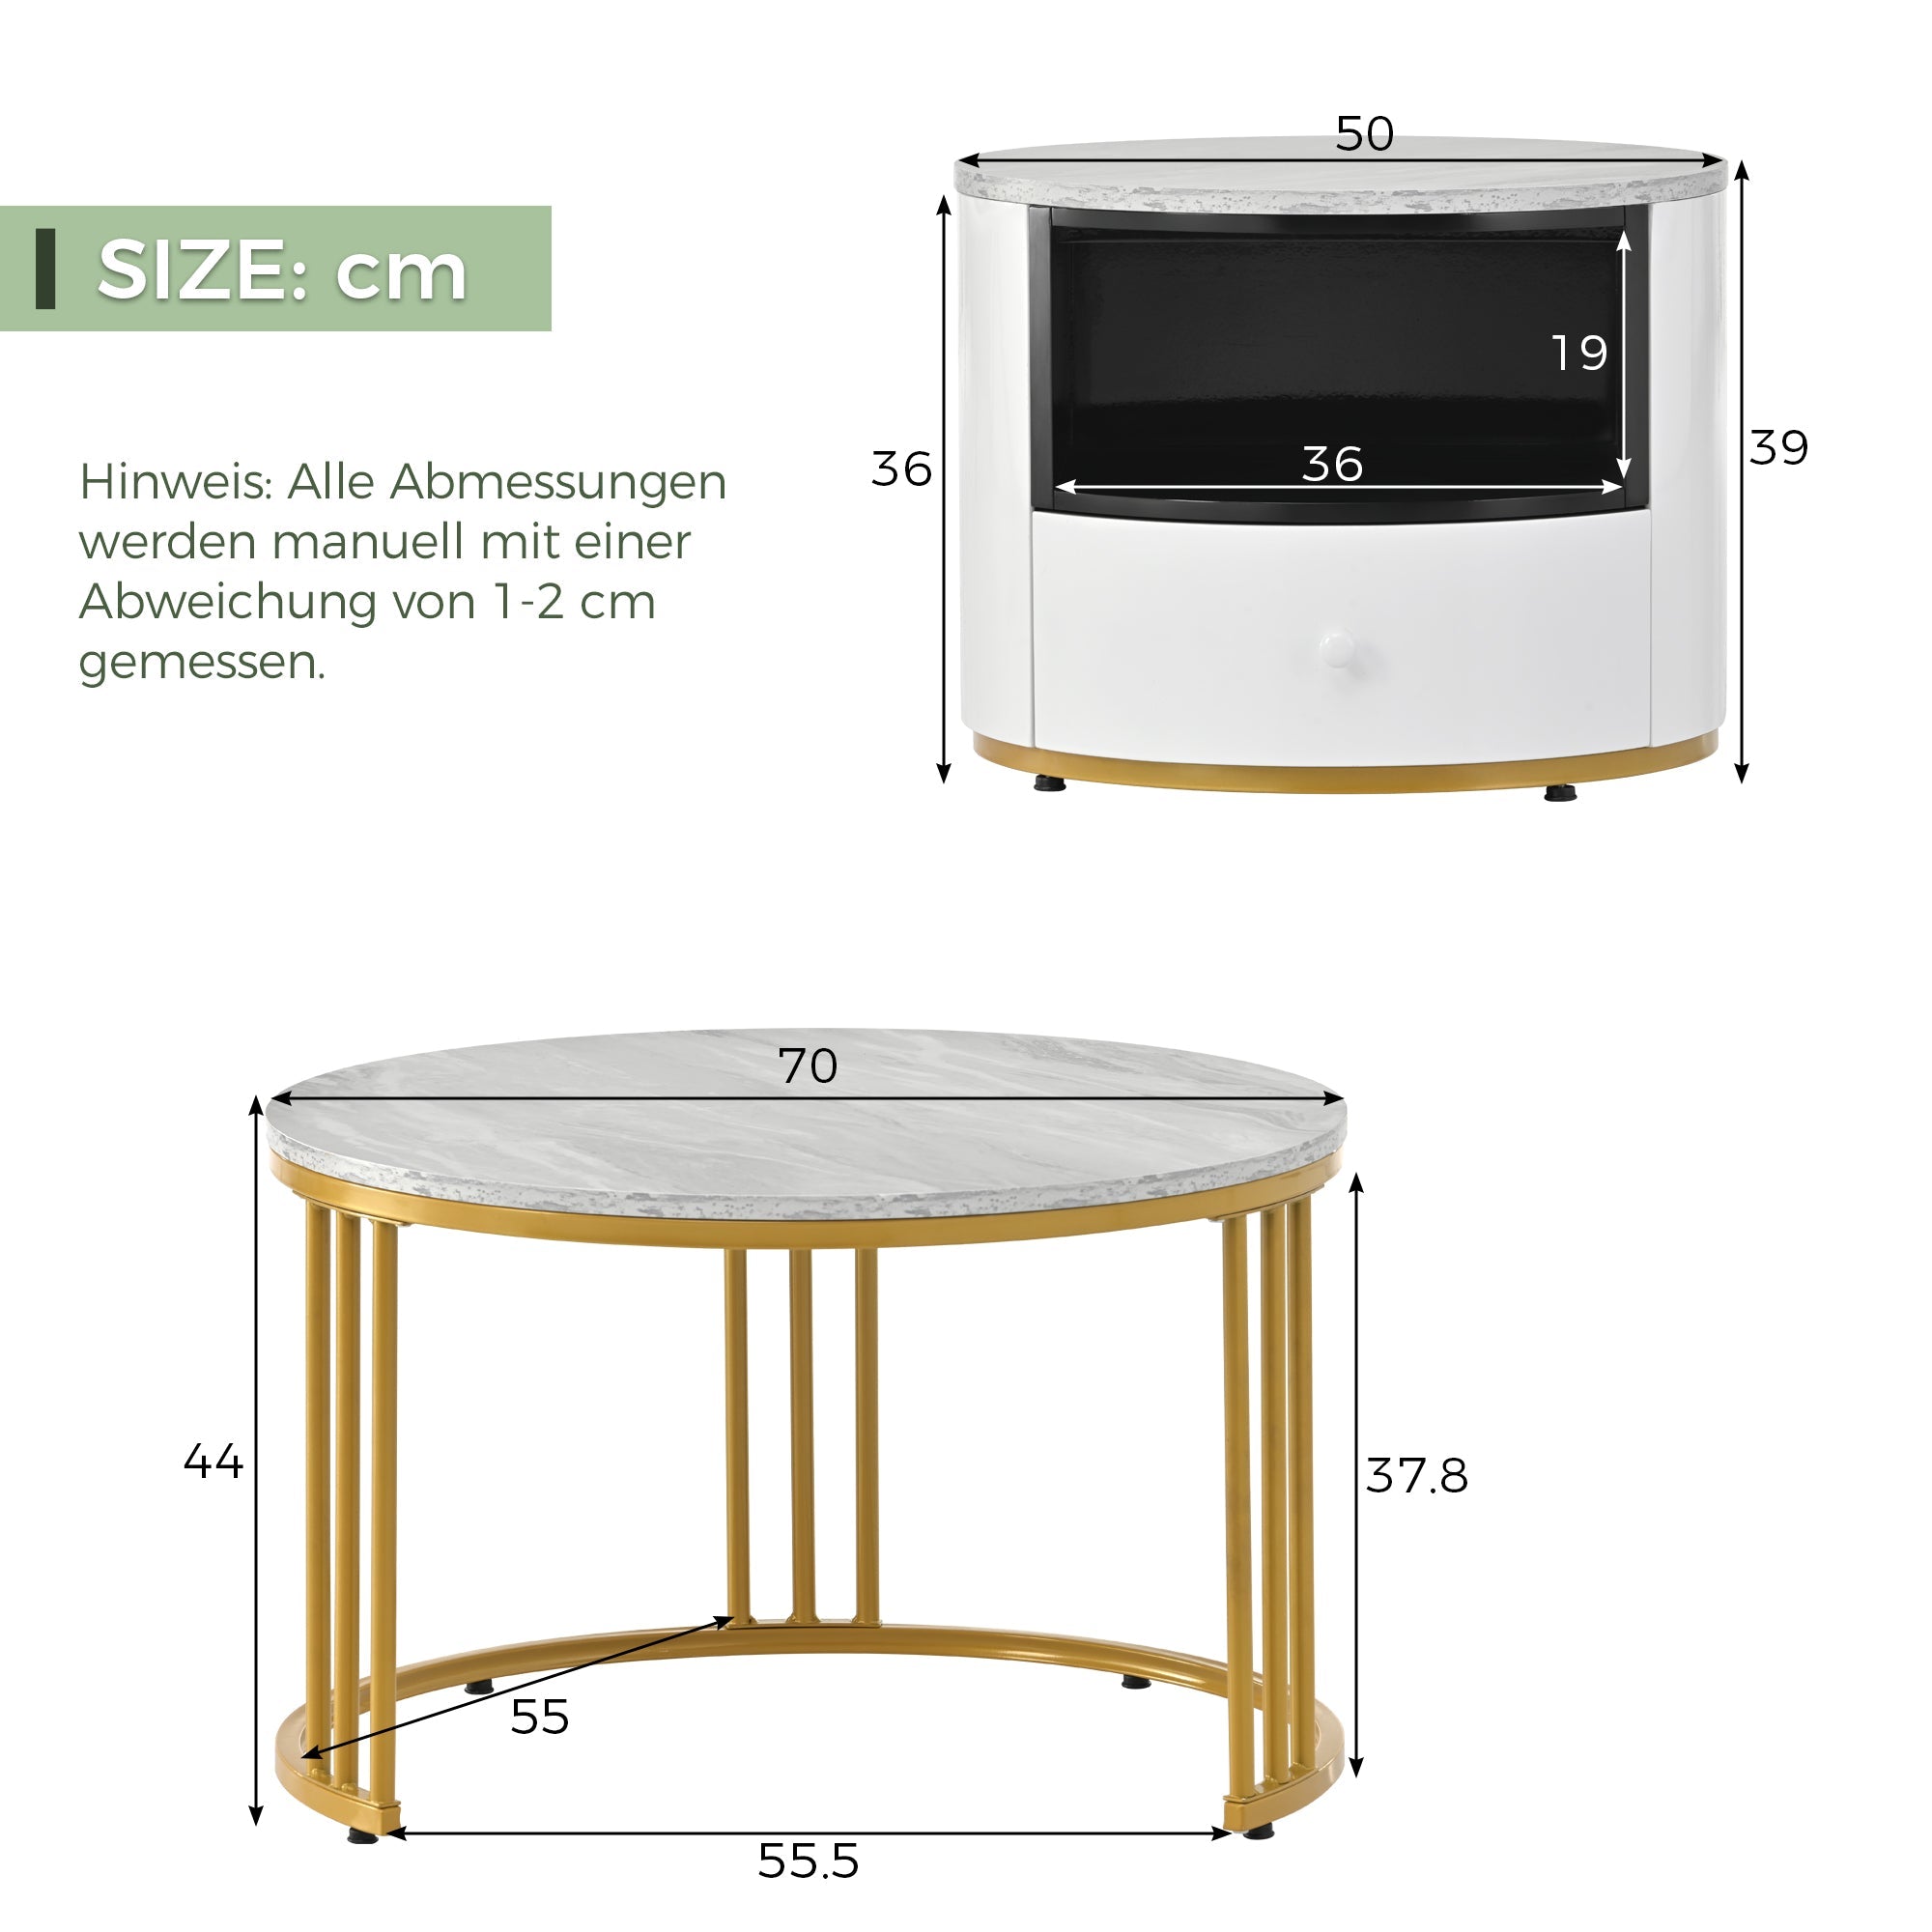 okwish CouchTisch, Couchtisch 2er Set Rund Tisch Wohnzimmer Rund mit Metallgestell Beistelltisch Modern Satztische fürs Wohnzimmer, Weiß Gold